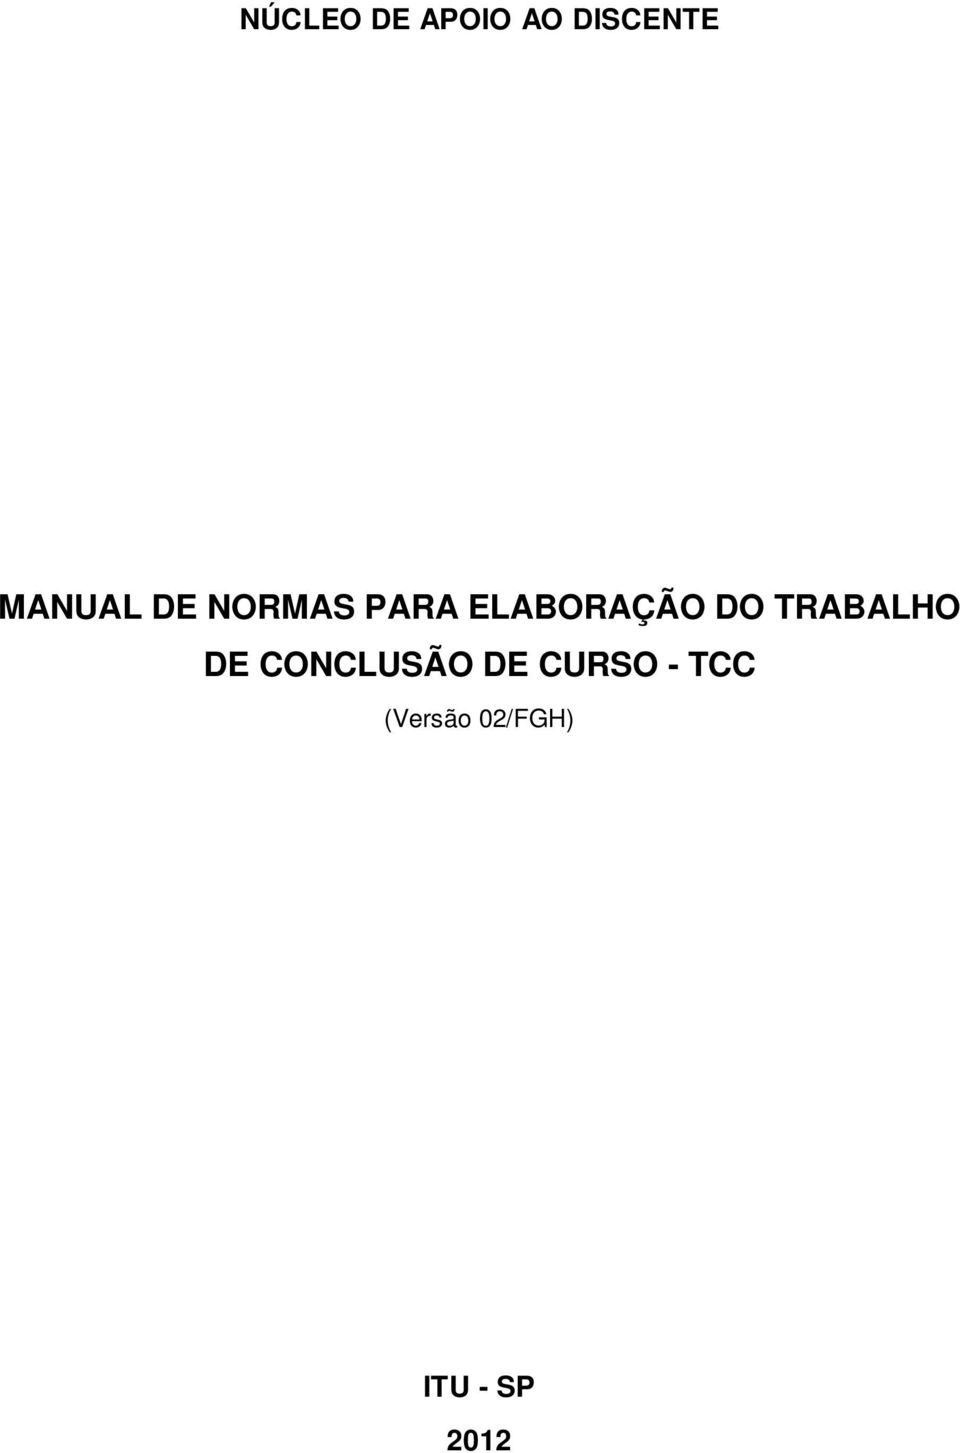 DO TRABALHO DE CONCLUSÃO DE